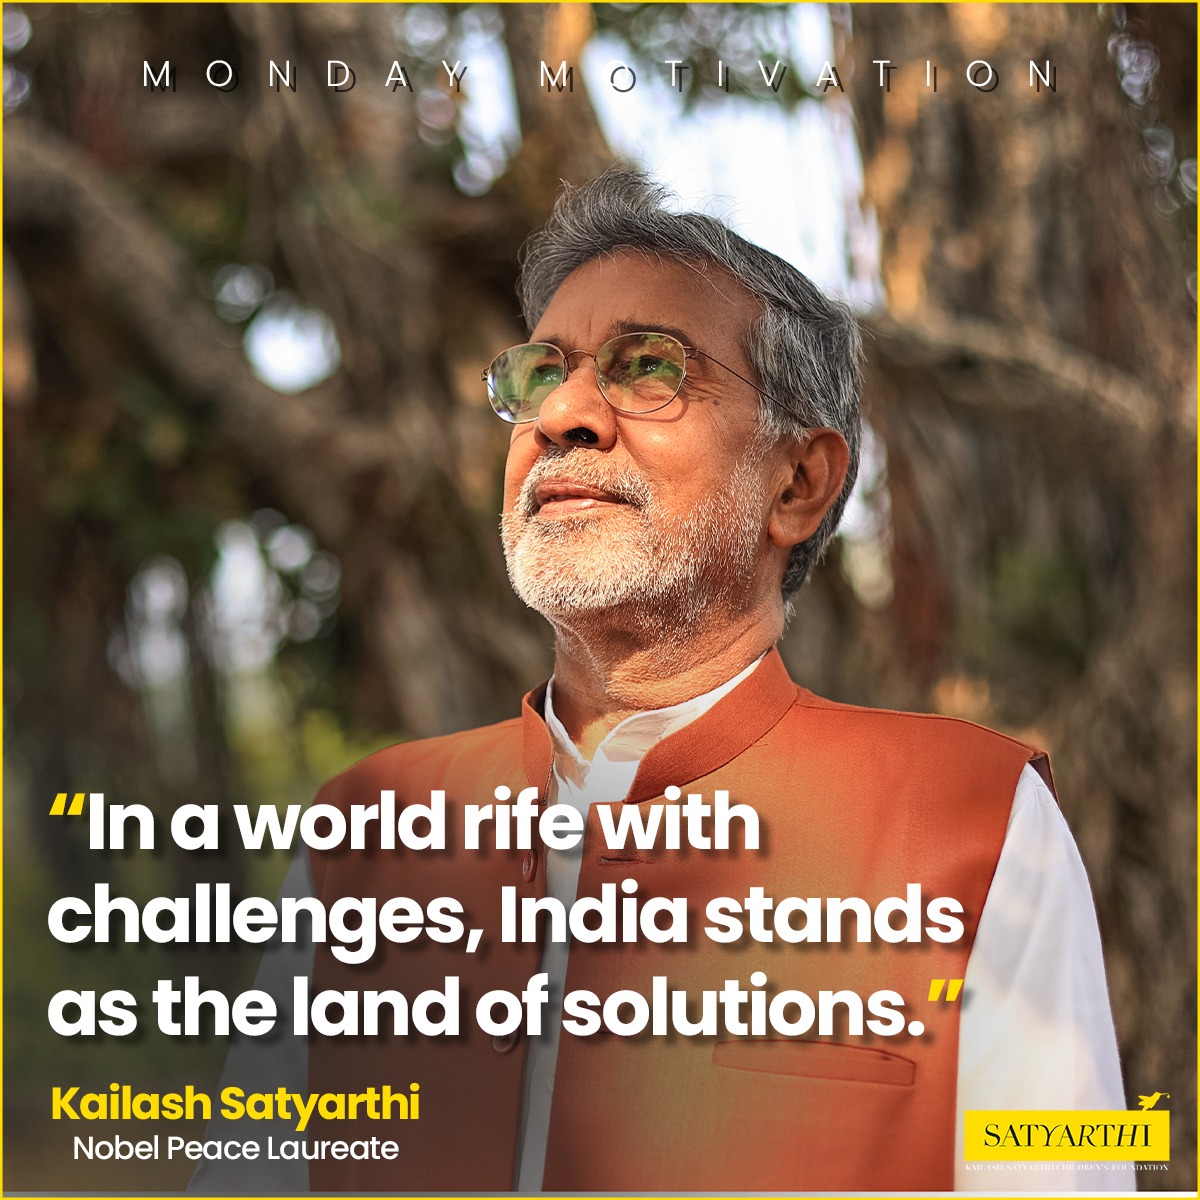 ✅💯
#Kailashsatyarthi #India #MondayMotivation